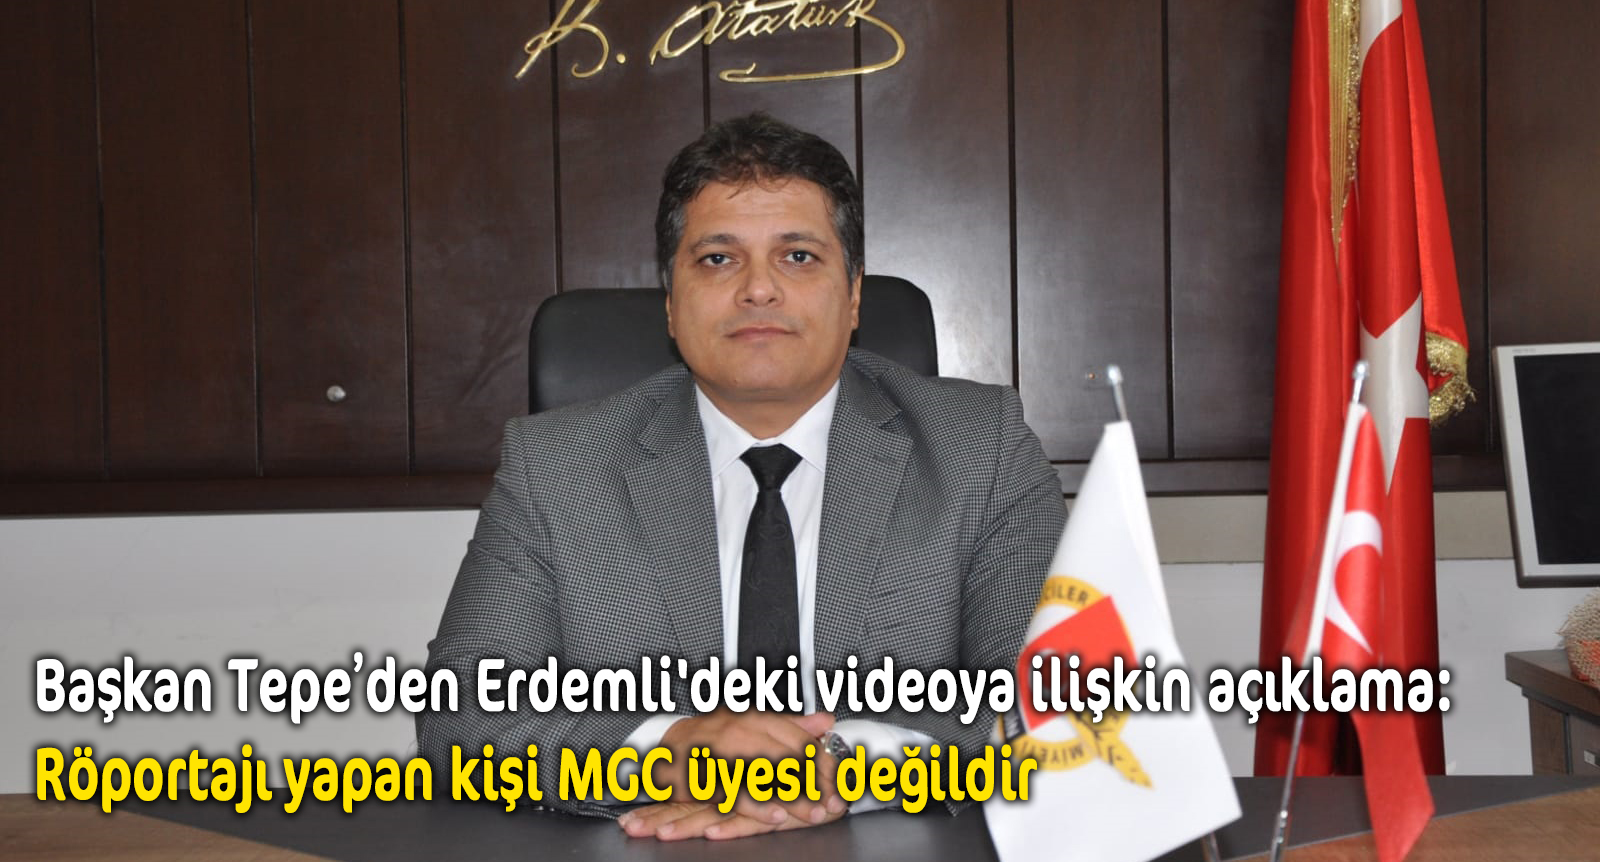 Başkan Tepe’den Erdemli’deki videoya ilişkin açıklama: Röportajı yapan kişi MGC üyesi değildir